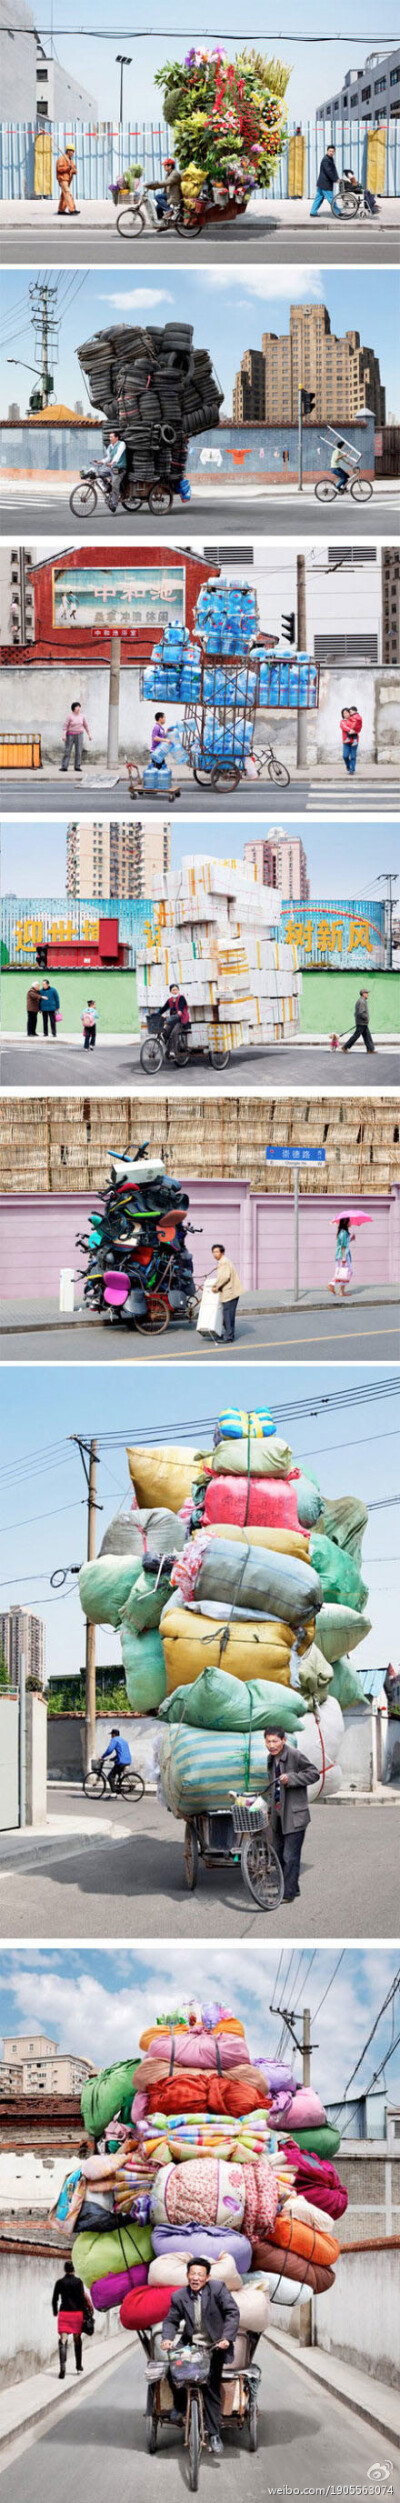 【法国摄影师眼中的上海骑车人】法国摄影师Alain Delorme向人们展示生活在自行车王国的中国人如何用自行车运输令人难以置信的大批货物。